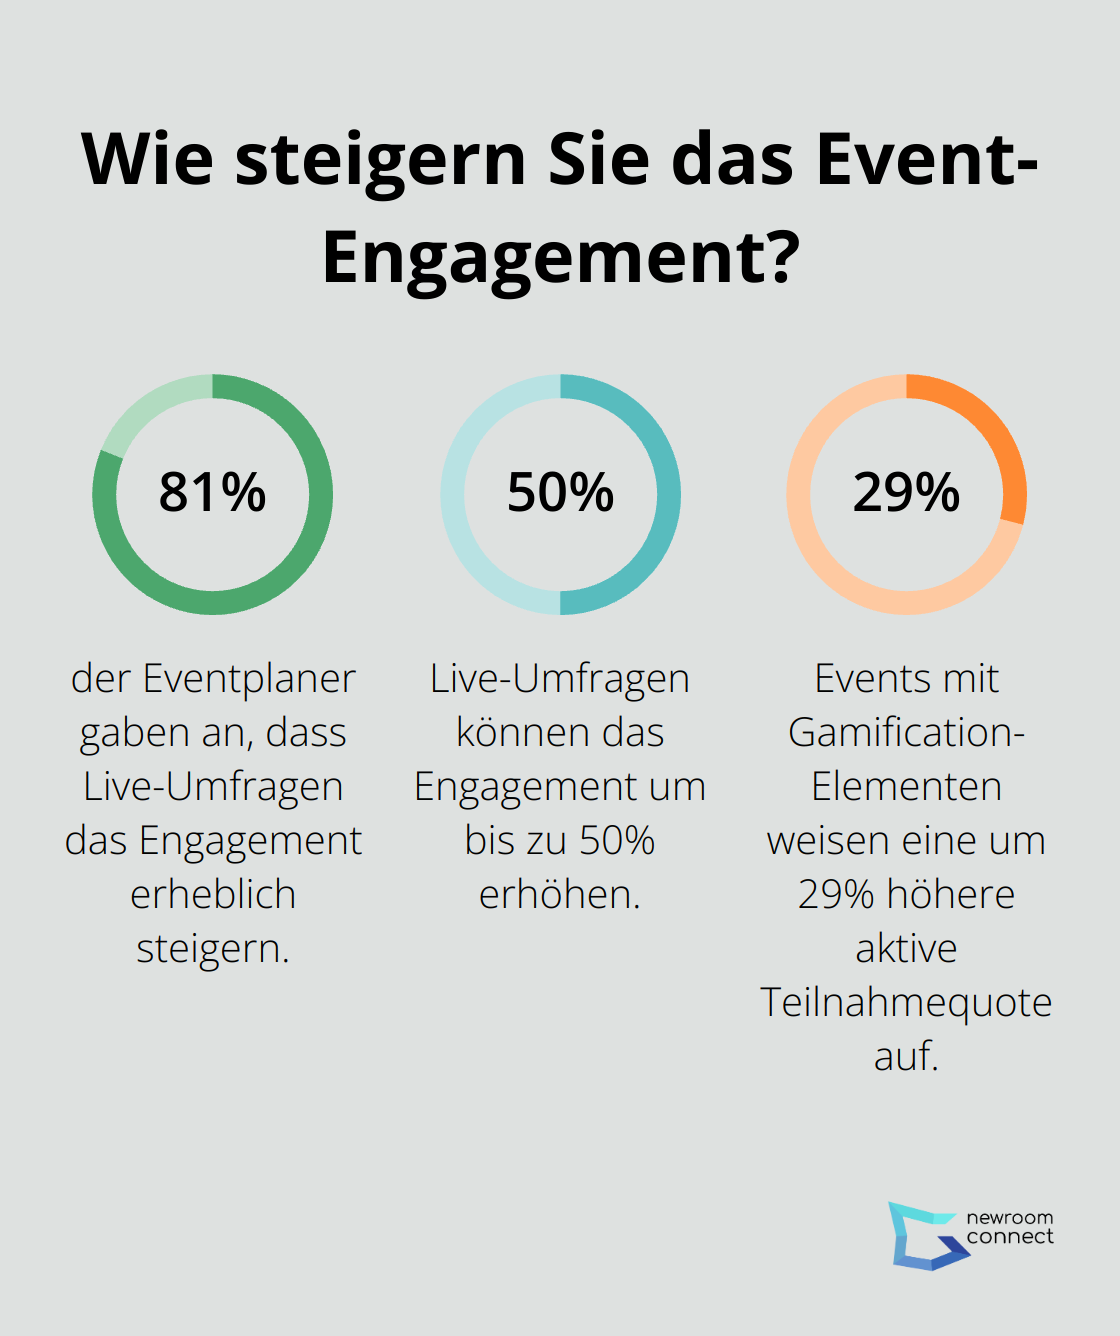 Fact - Wie steigern Sie das Event-Engagement?